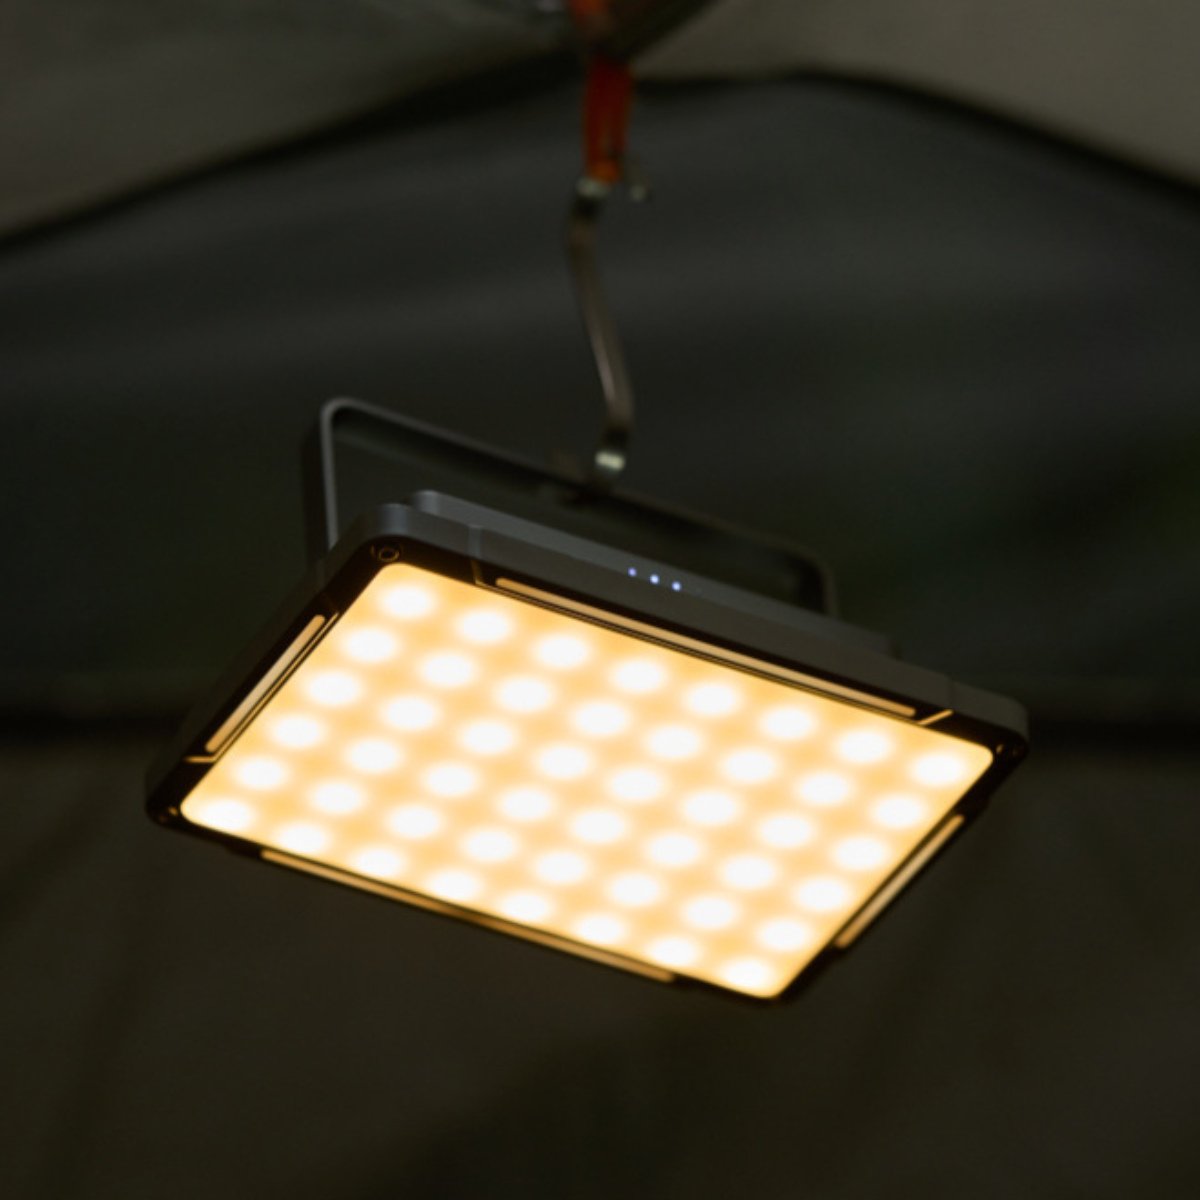 UWOT Metall-Campinglampe: tragbar&langlebig, zwei Leuchtrichtungen, camping hohe Licht, Weiß,Gelb lampe einstellbares Ausdauer